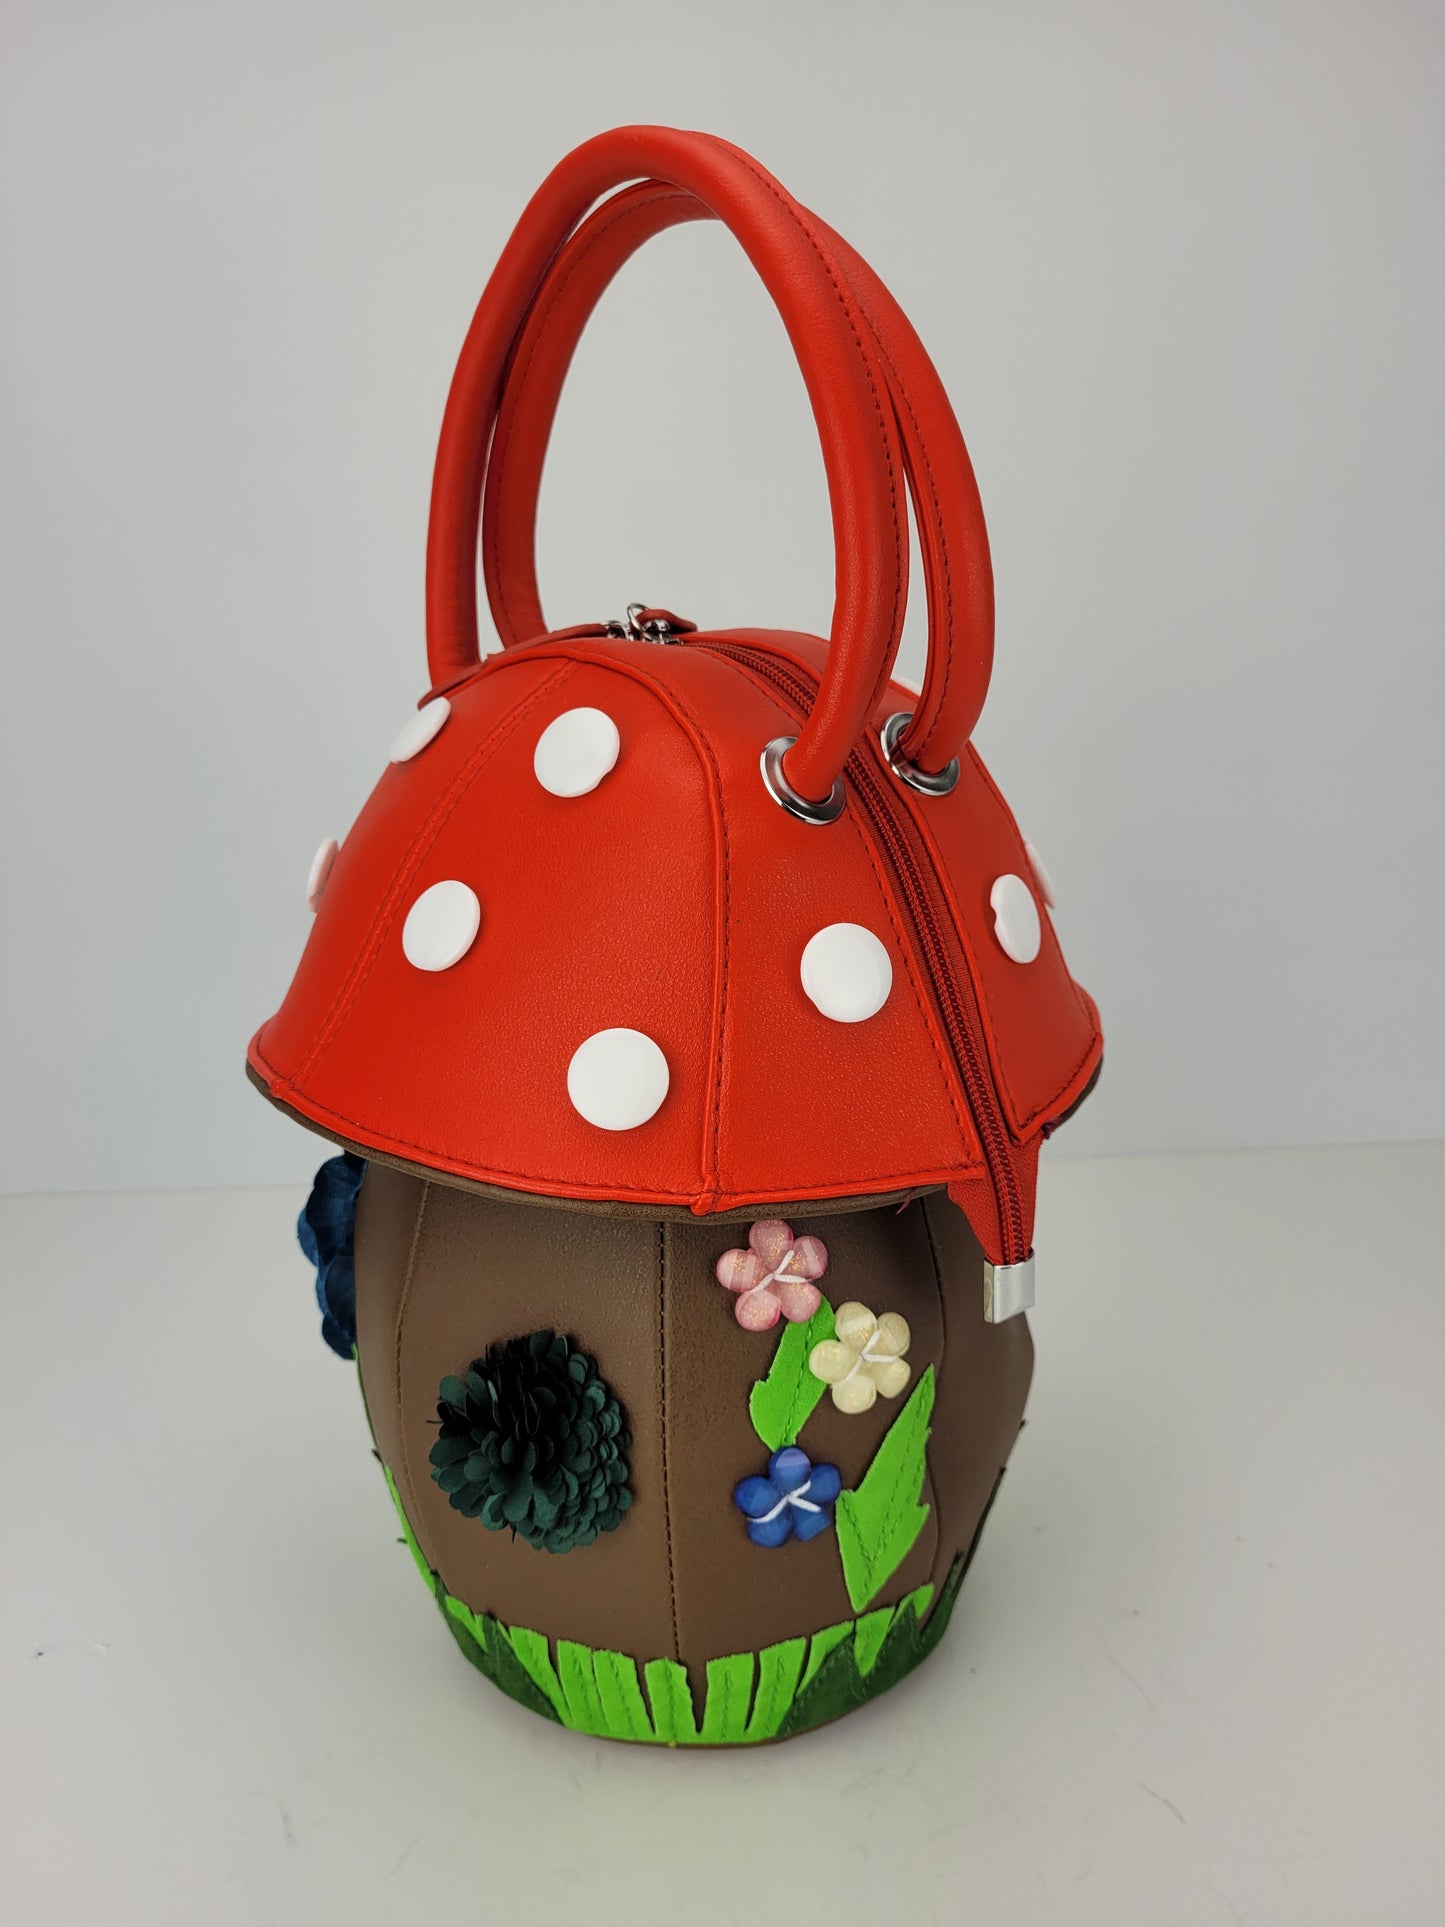 Red Mushroom handbag